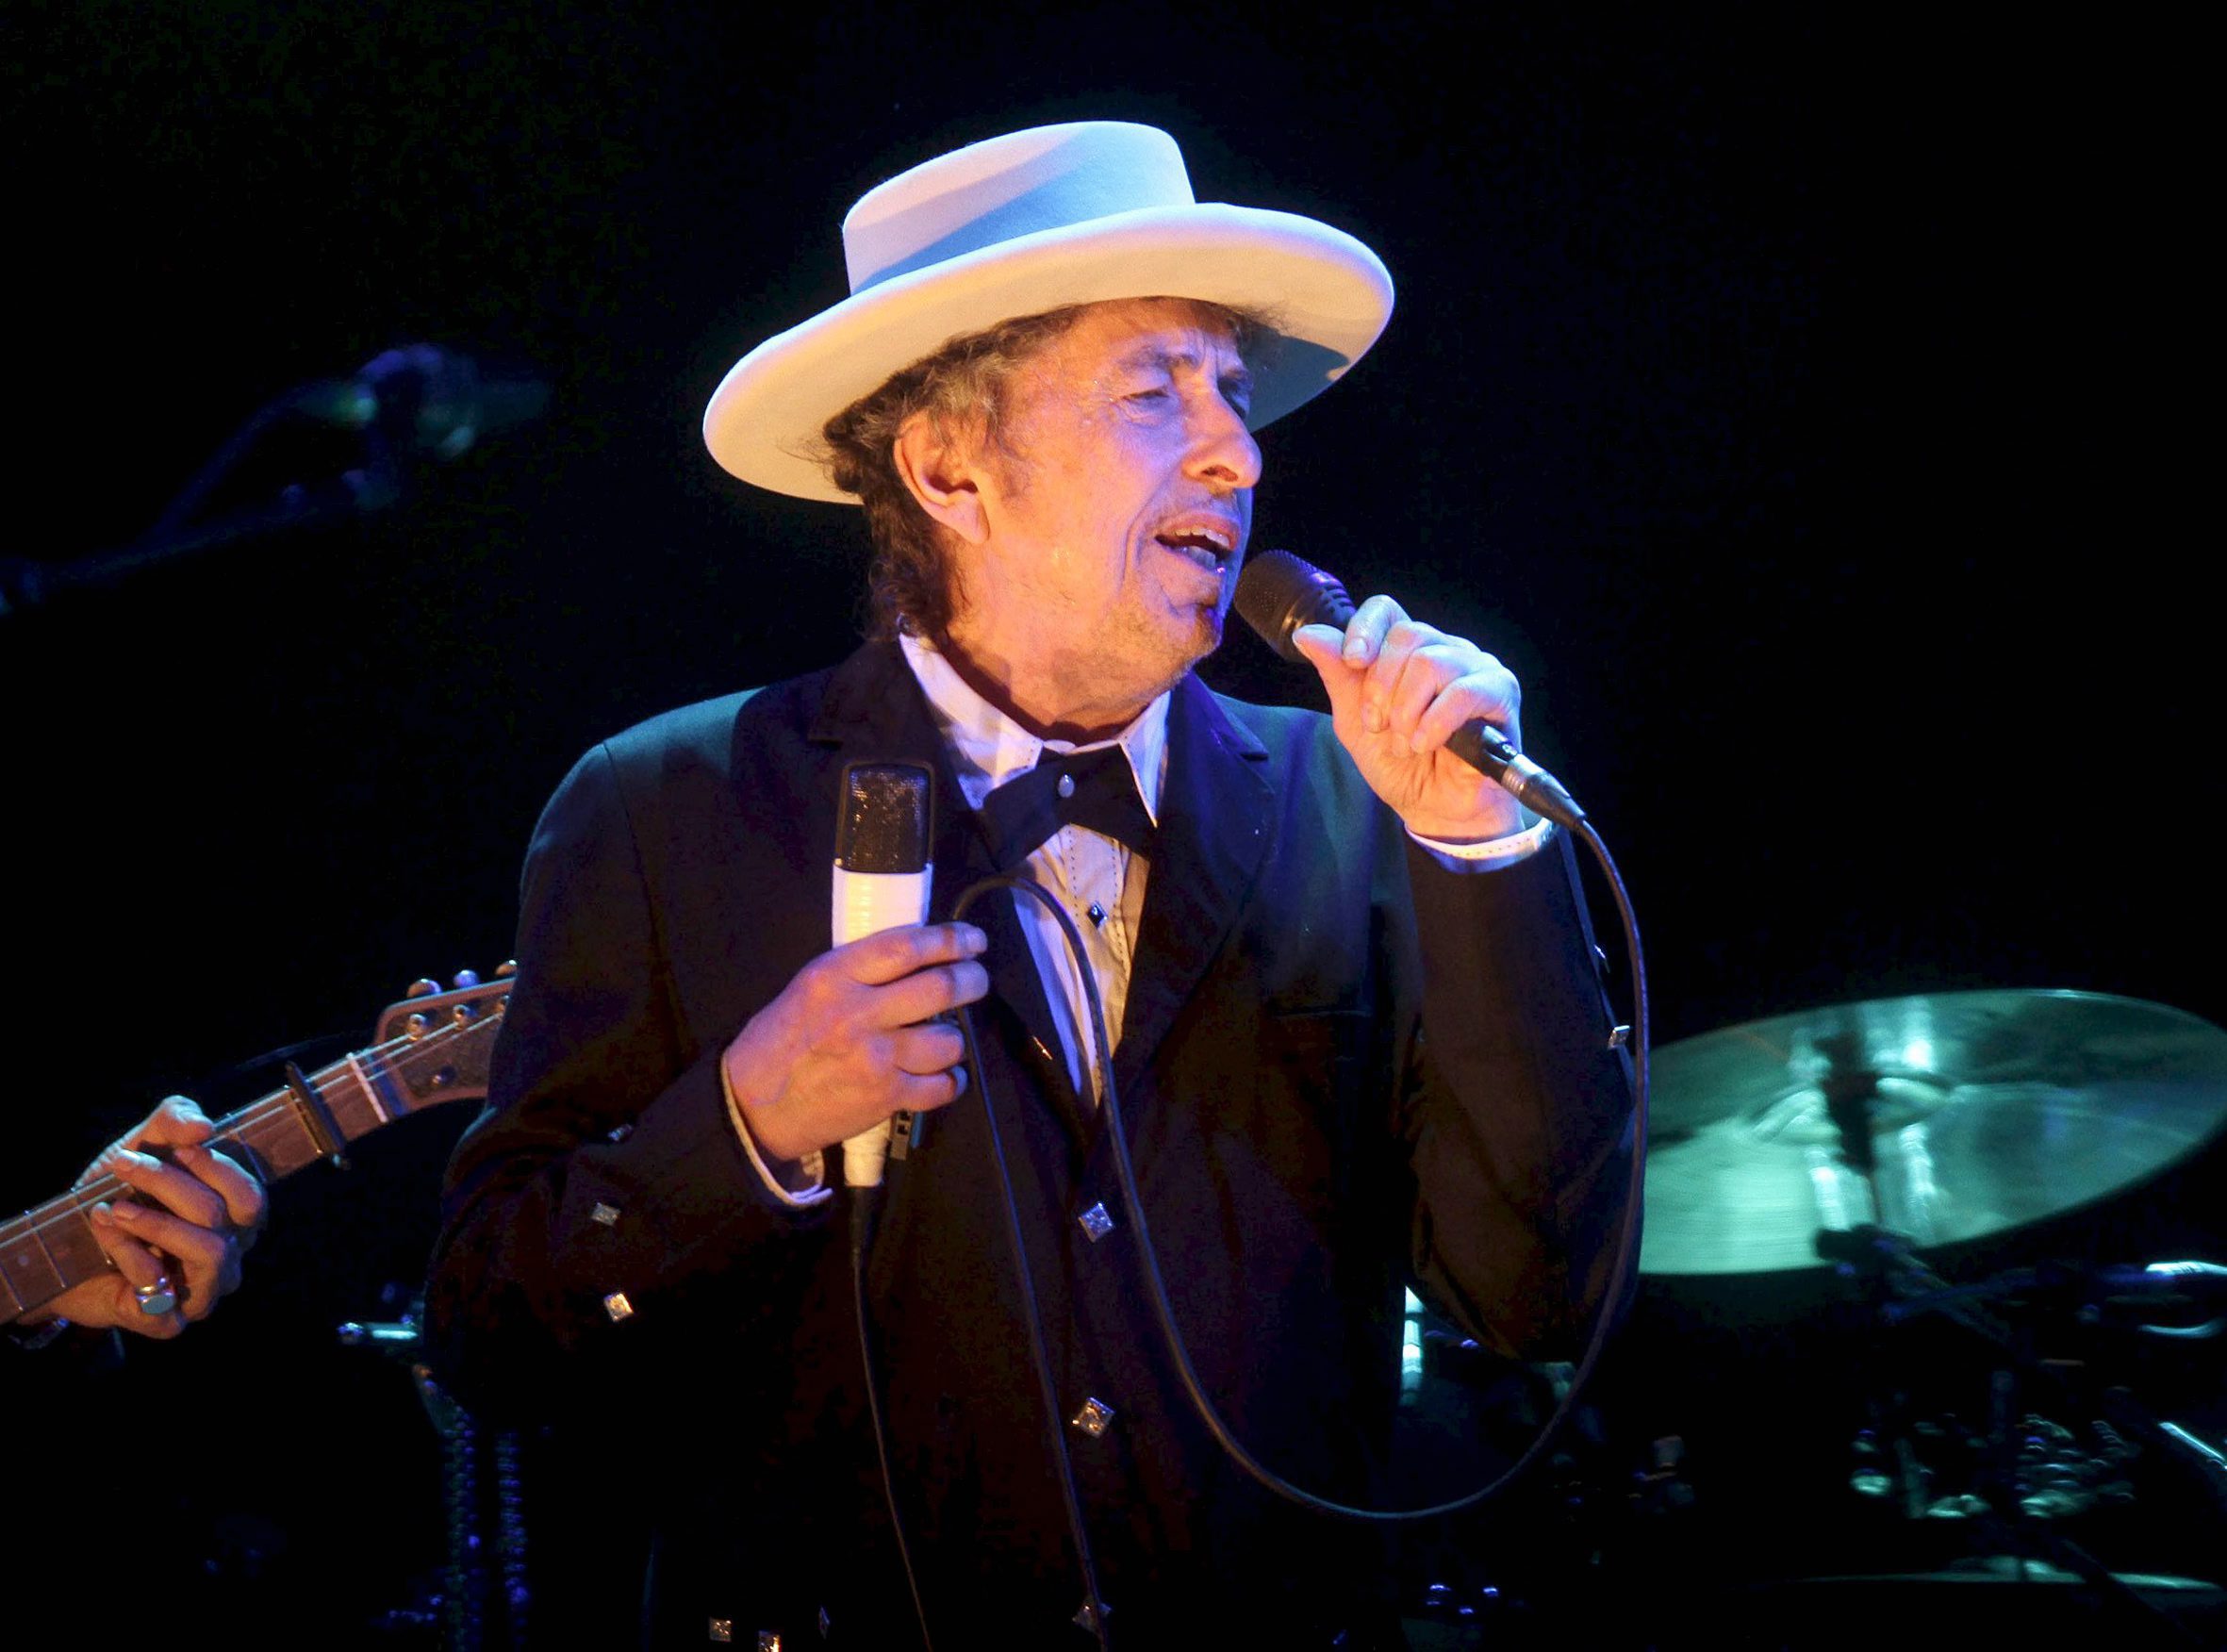 Bob Dylan dostał literackiego Nobla 2016. Wywołało to niemałe zaskoczenie wśród publiczności zgromadzonej w Sali Giełdy w Sztokholmie. Nie był faworytem w tegorocznych przednoblowskich spekulacjach, ale jego nazwisko jako potencjalnego kandydata do Nobla pojawiało się w poprzednich latach. Wielu obstawiało jednak, że po ponad 20 latach Nobel trafi nareszcie do autora z USA.